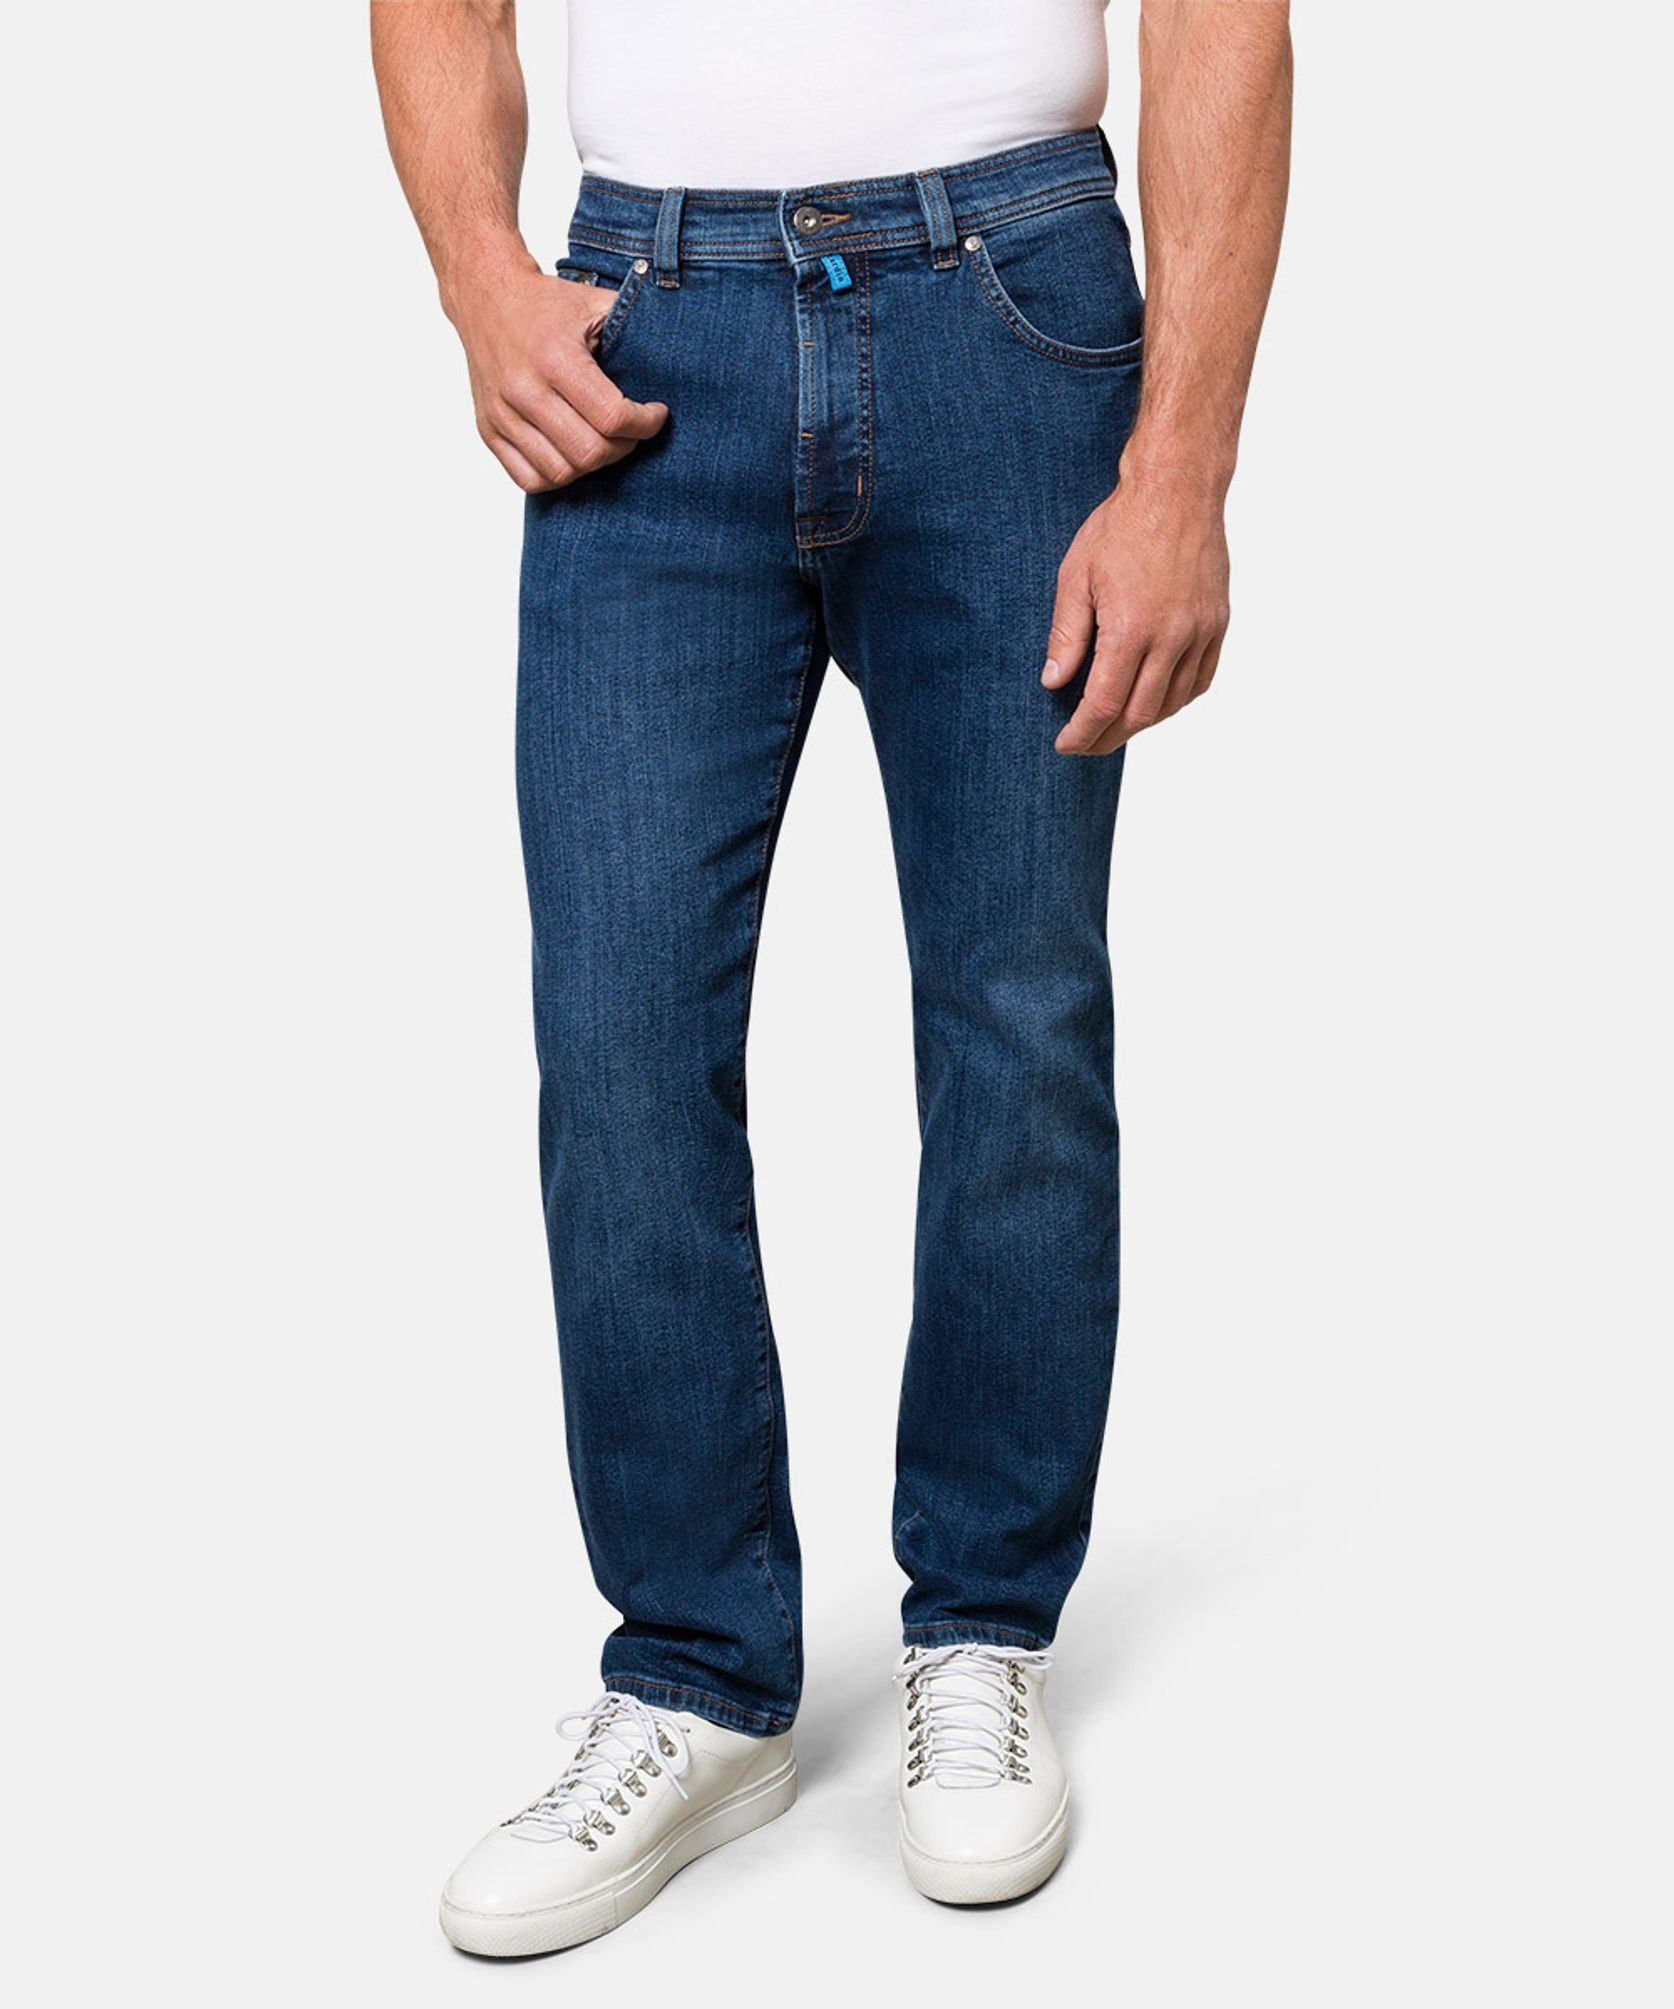 Pierre Cardin 5-Pocket-Jeans 32310.7001 C7